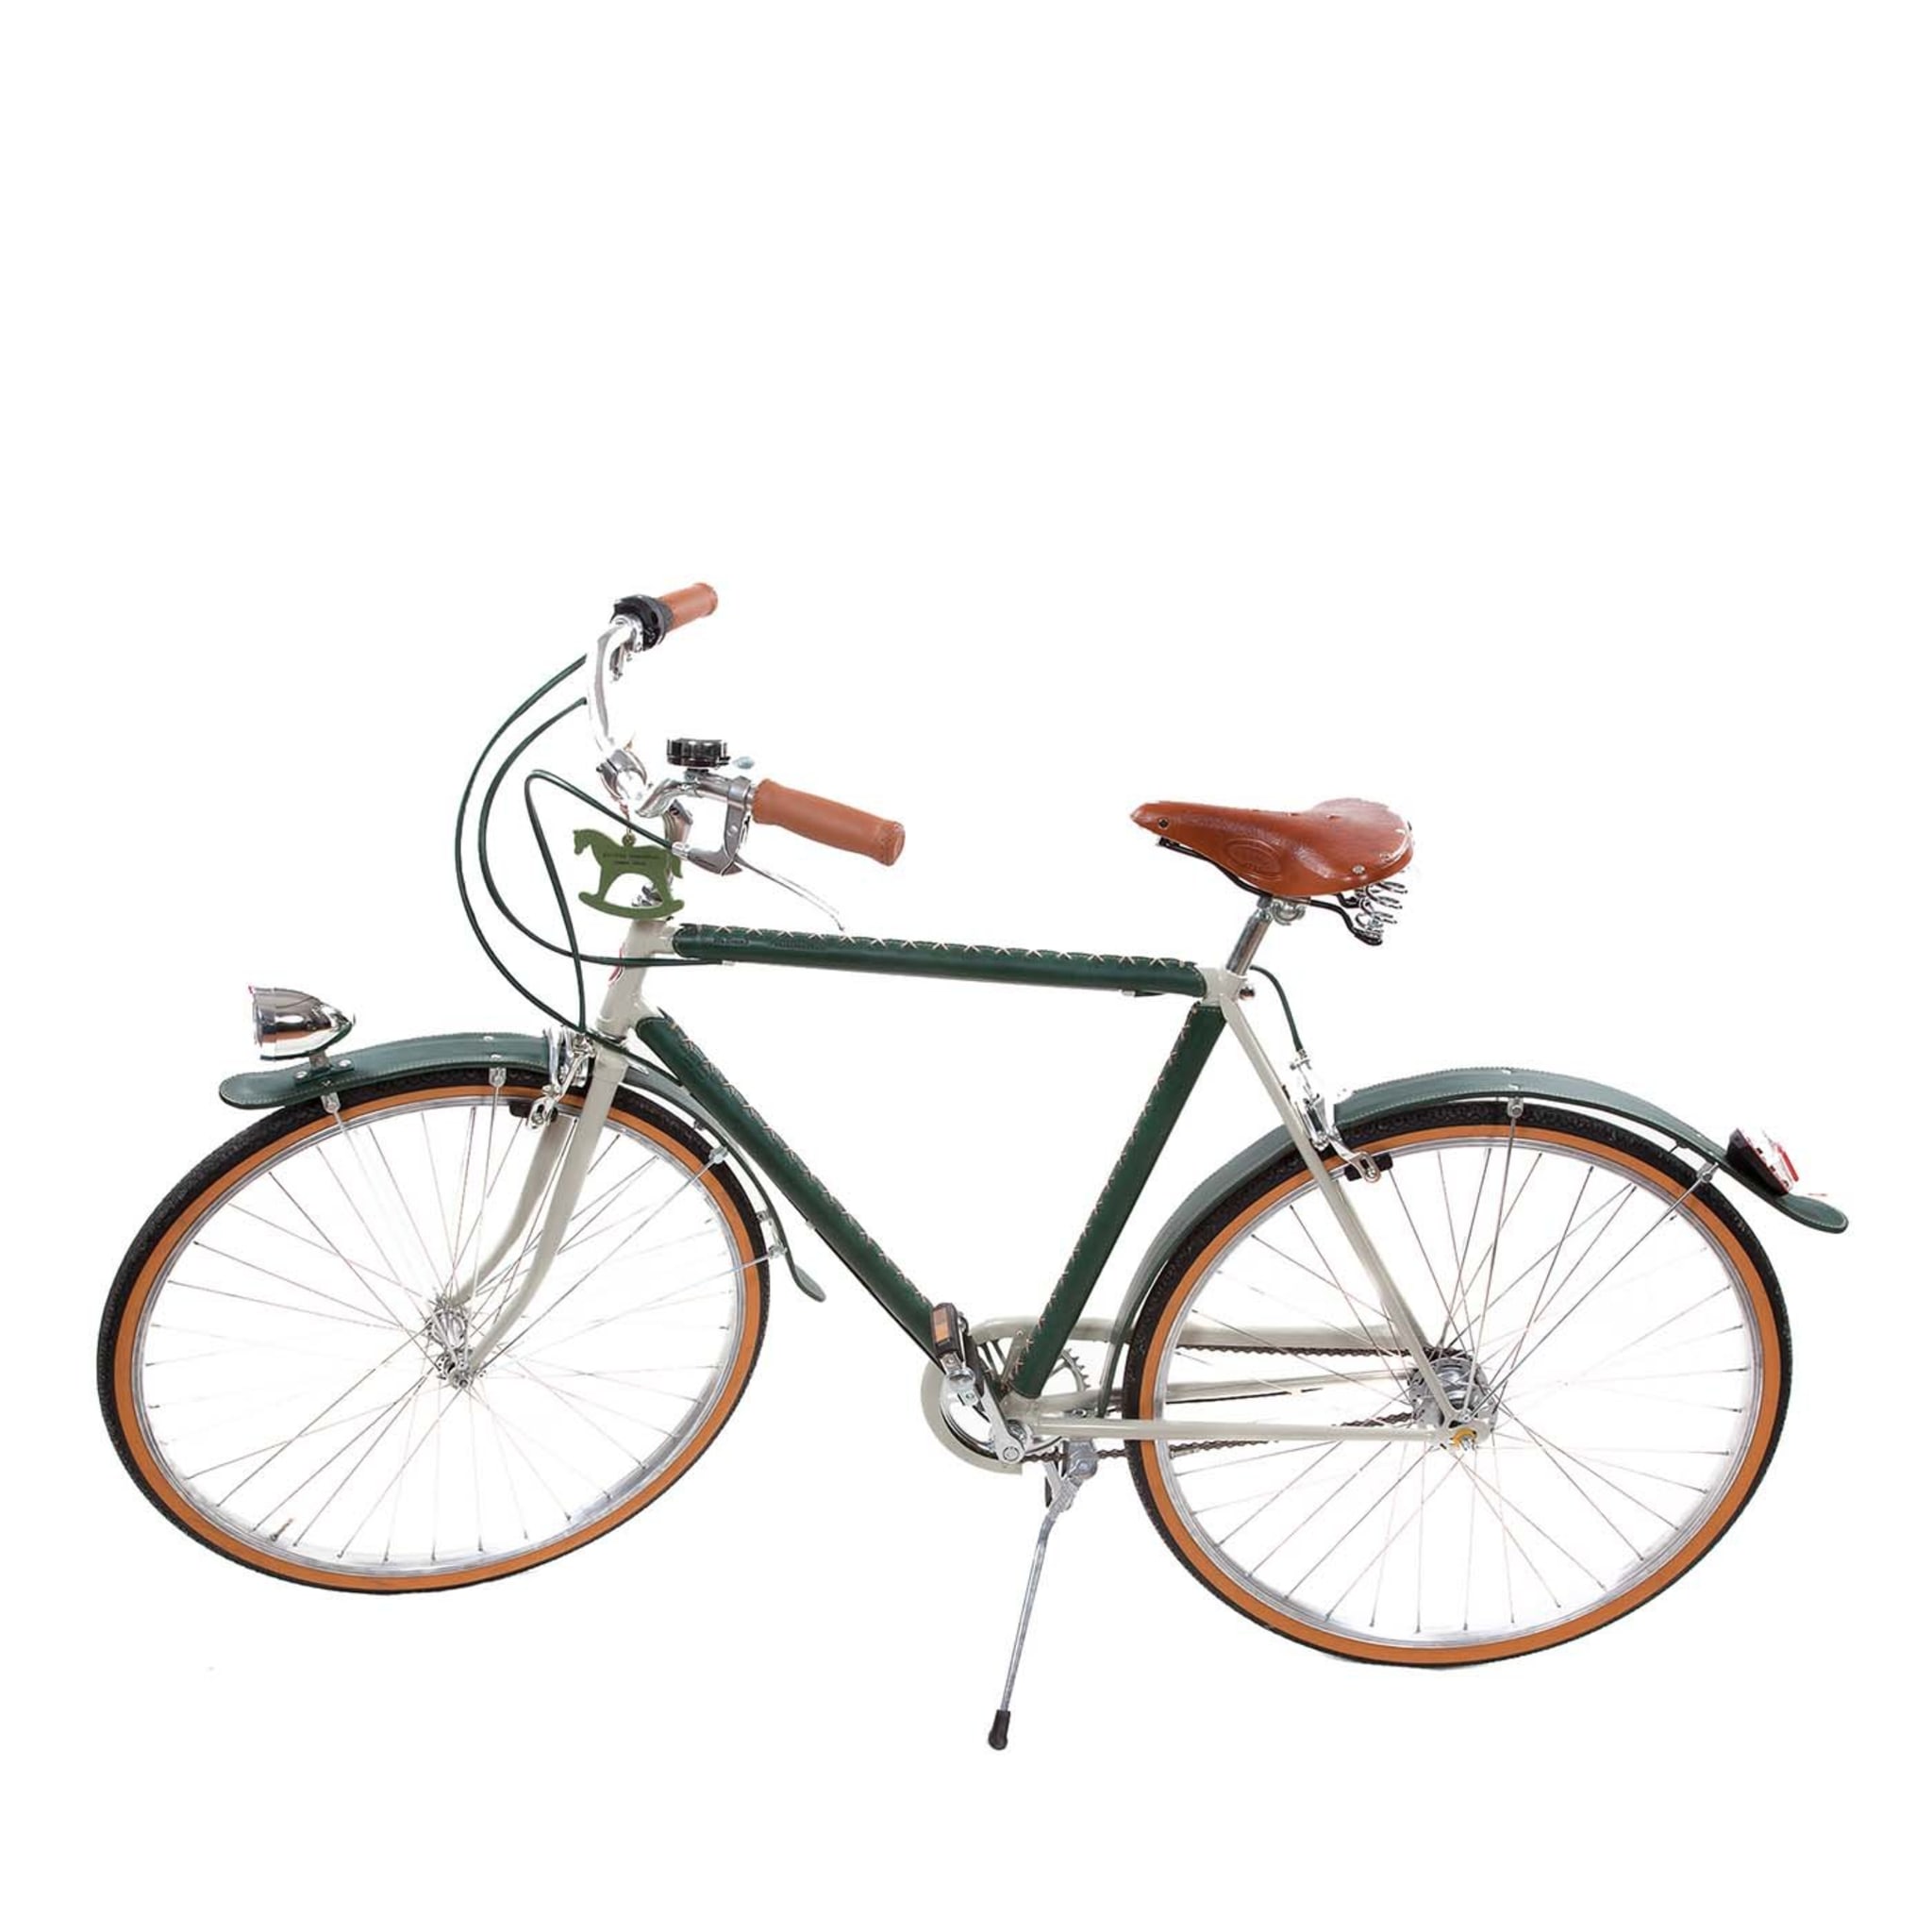 Bicicleta de hombre cubierta de cuero Tabaco y verde - Vista principal